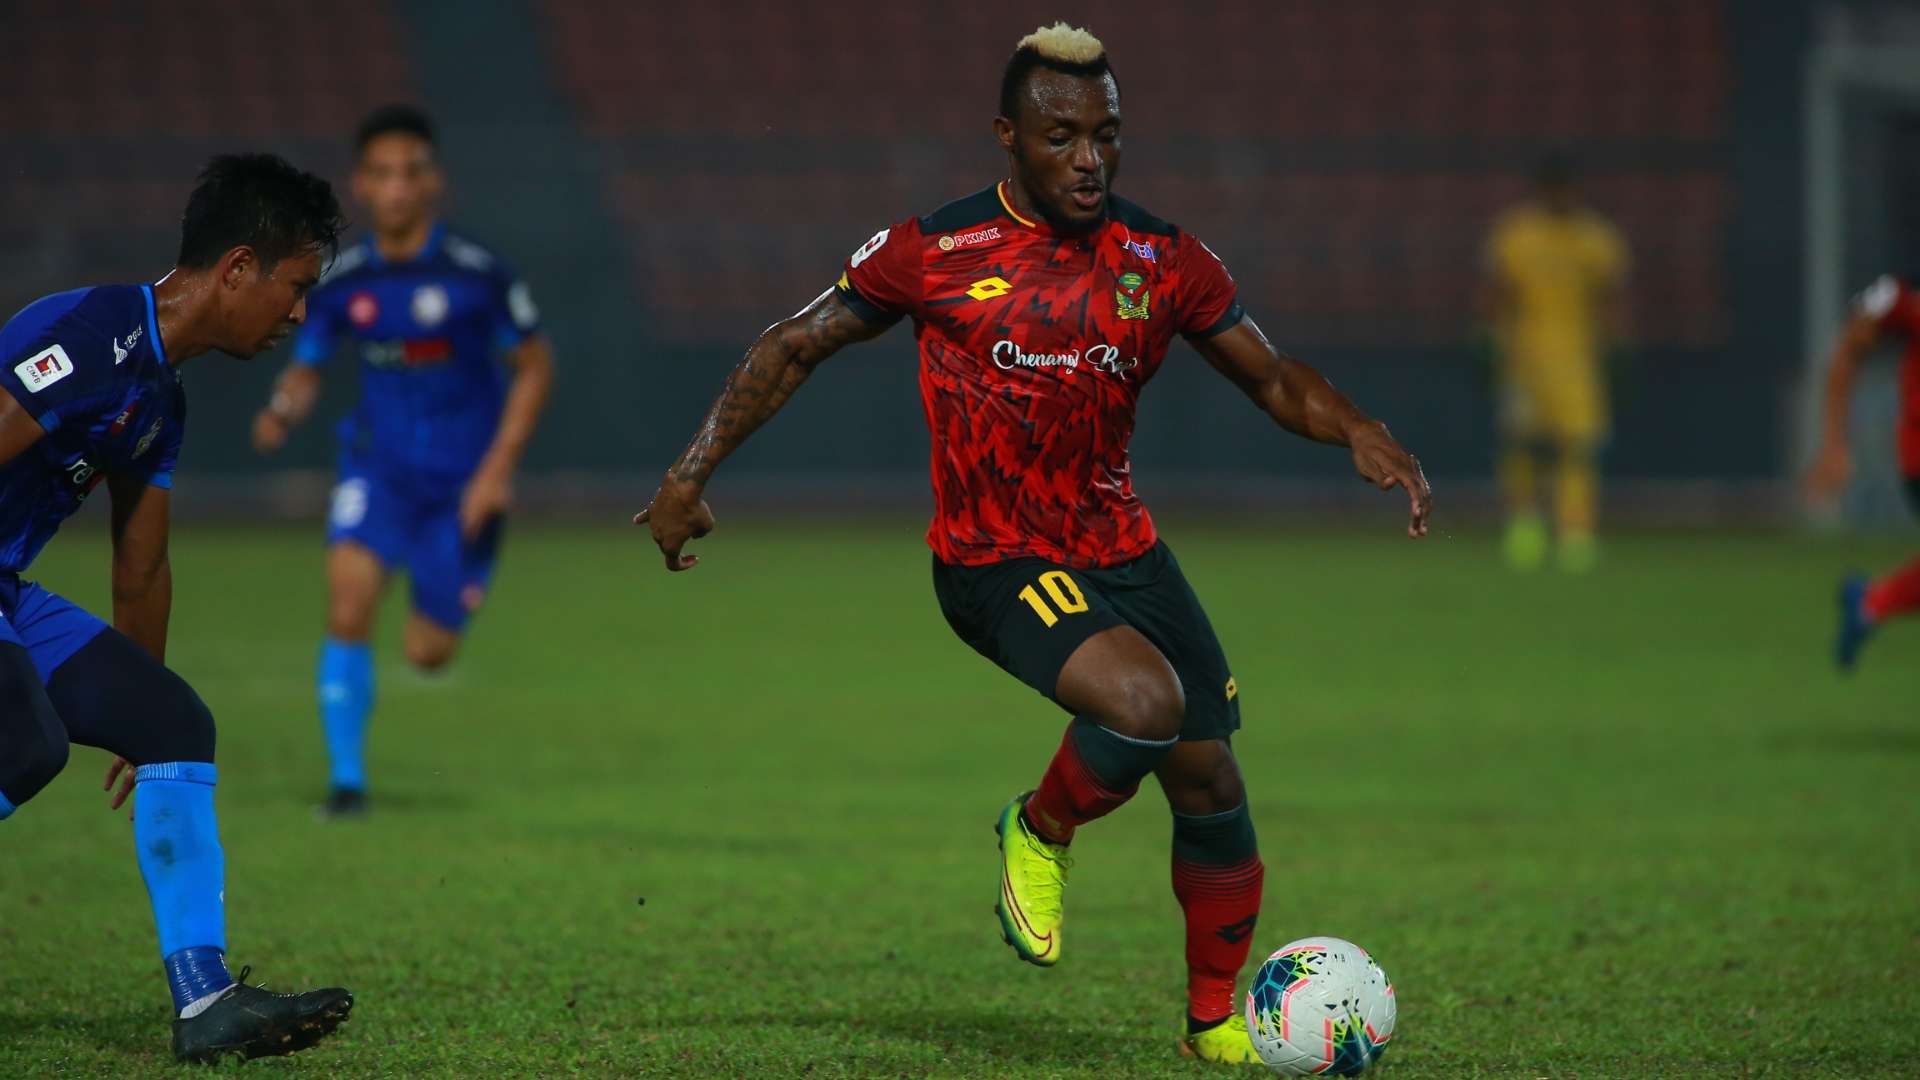 Tchetche Kipre, PDRM v Kedah, Super League, 29 Aug 2020